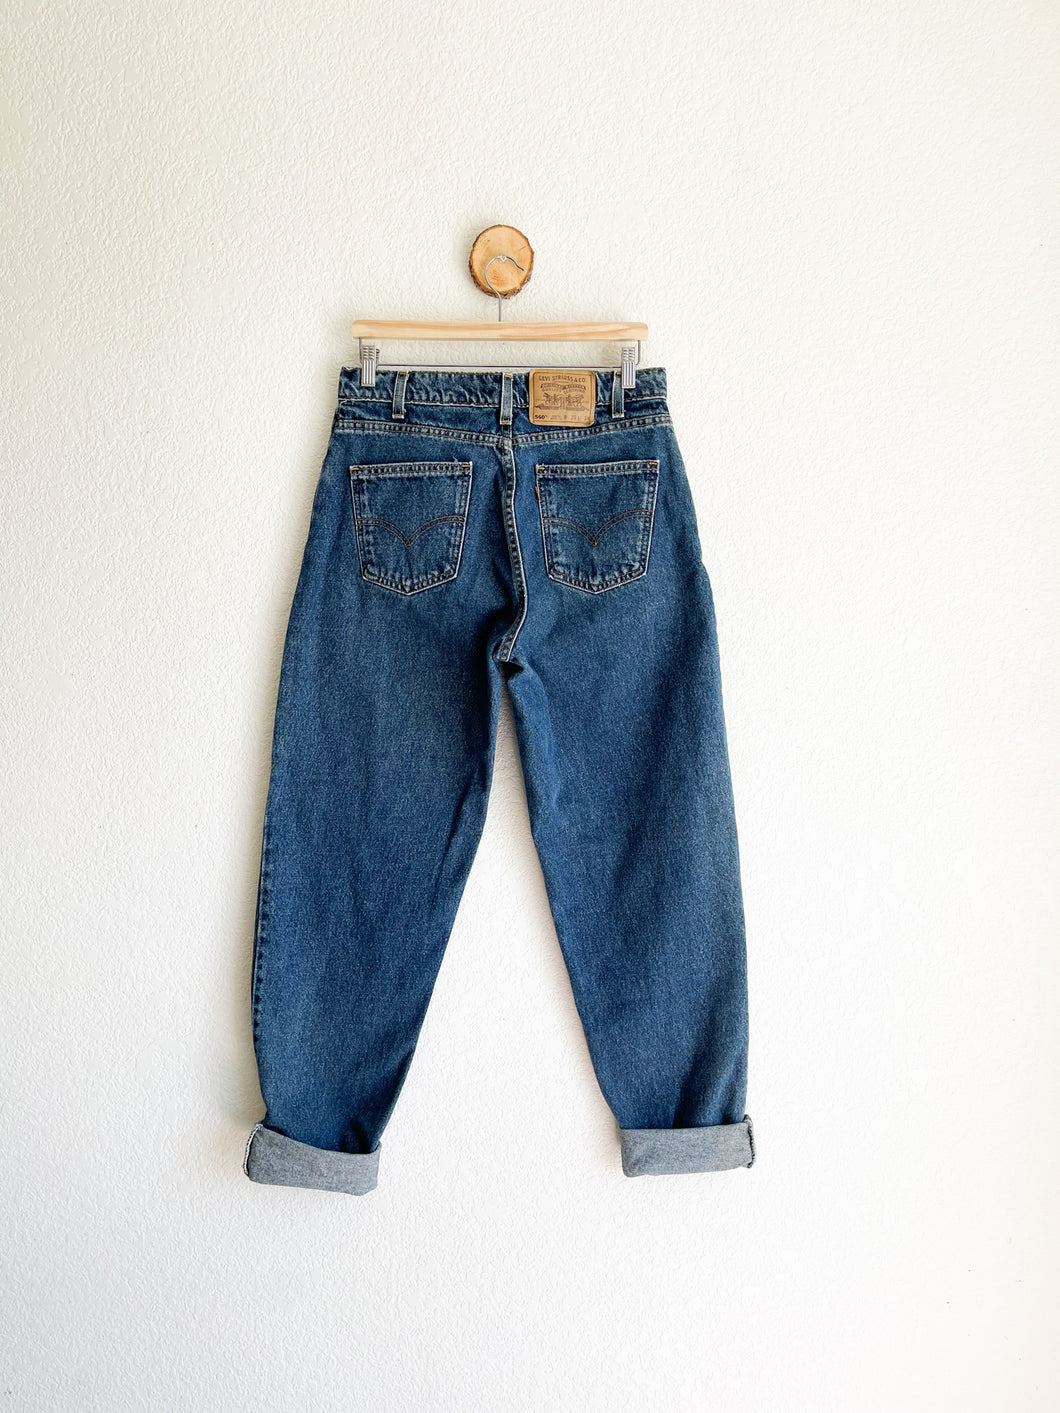 Vintage Levi's 560 Jeans - 32